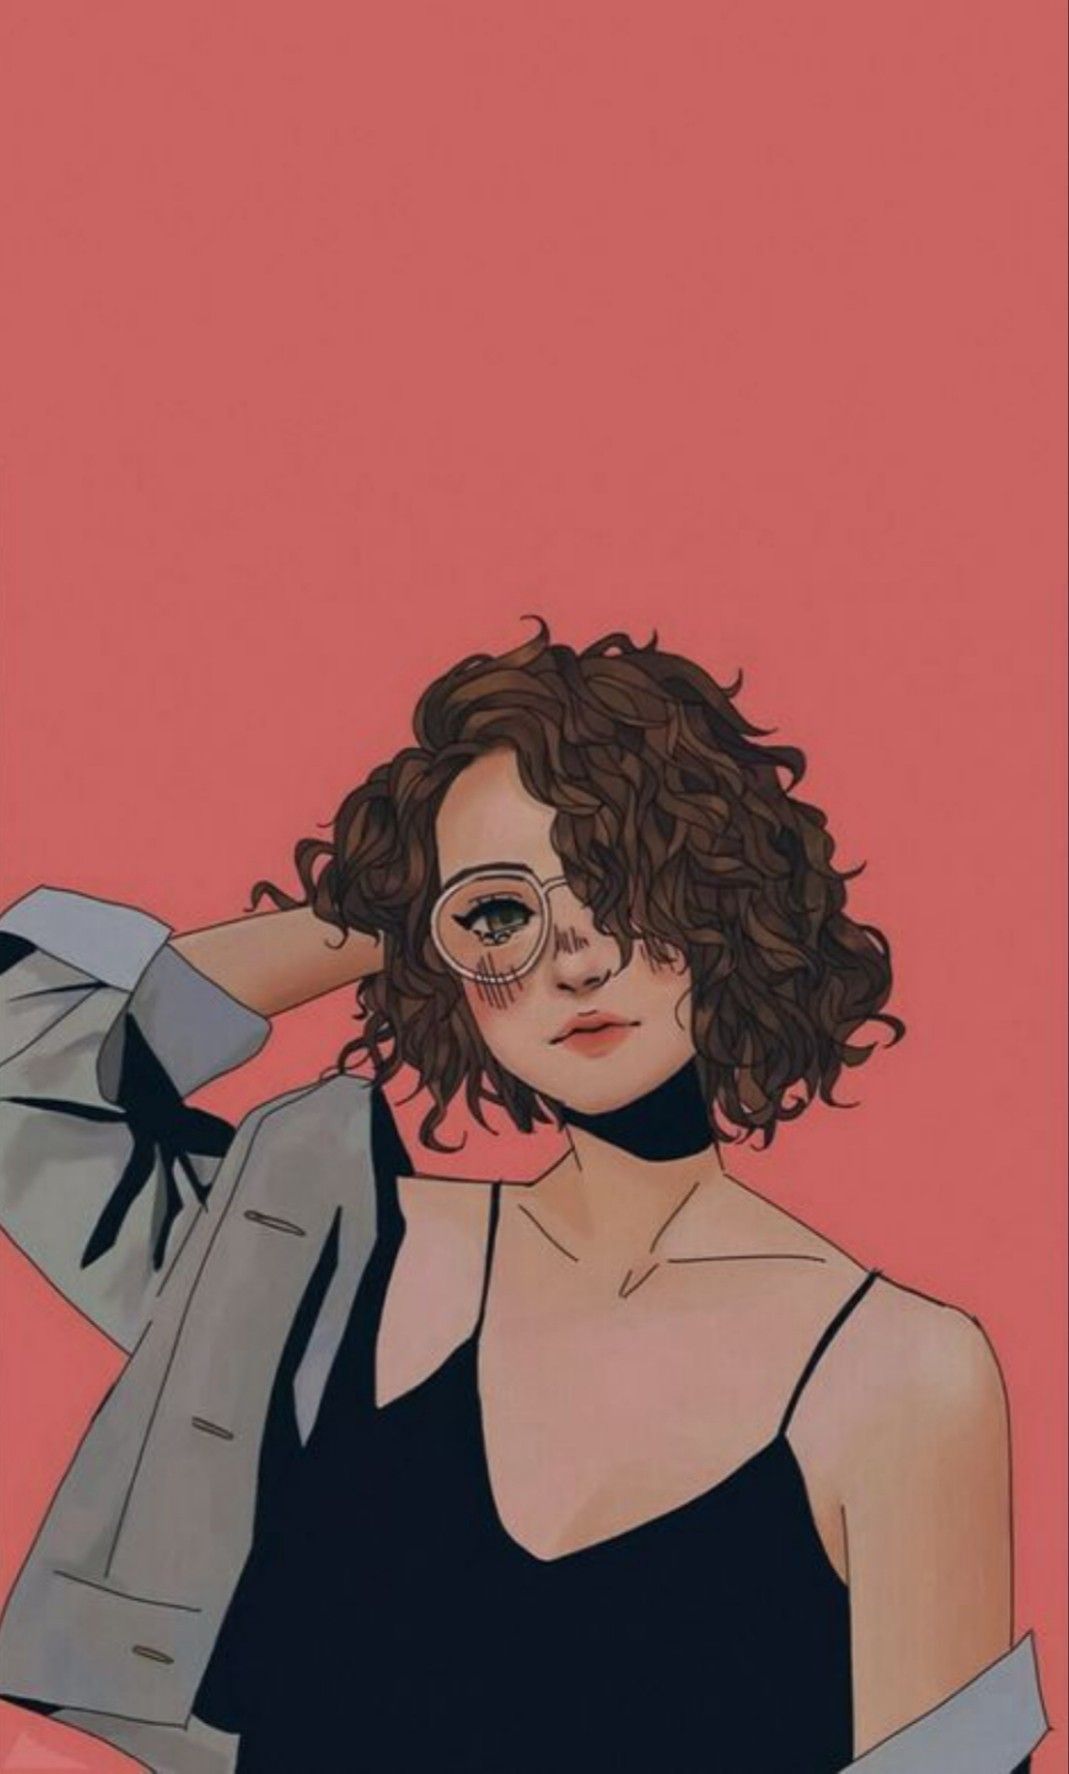 18+] Curly Girl Cartoon Wallpapers - WallpaperSafari